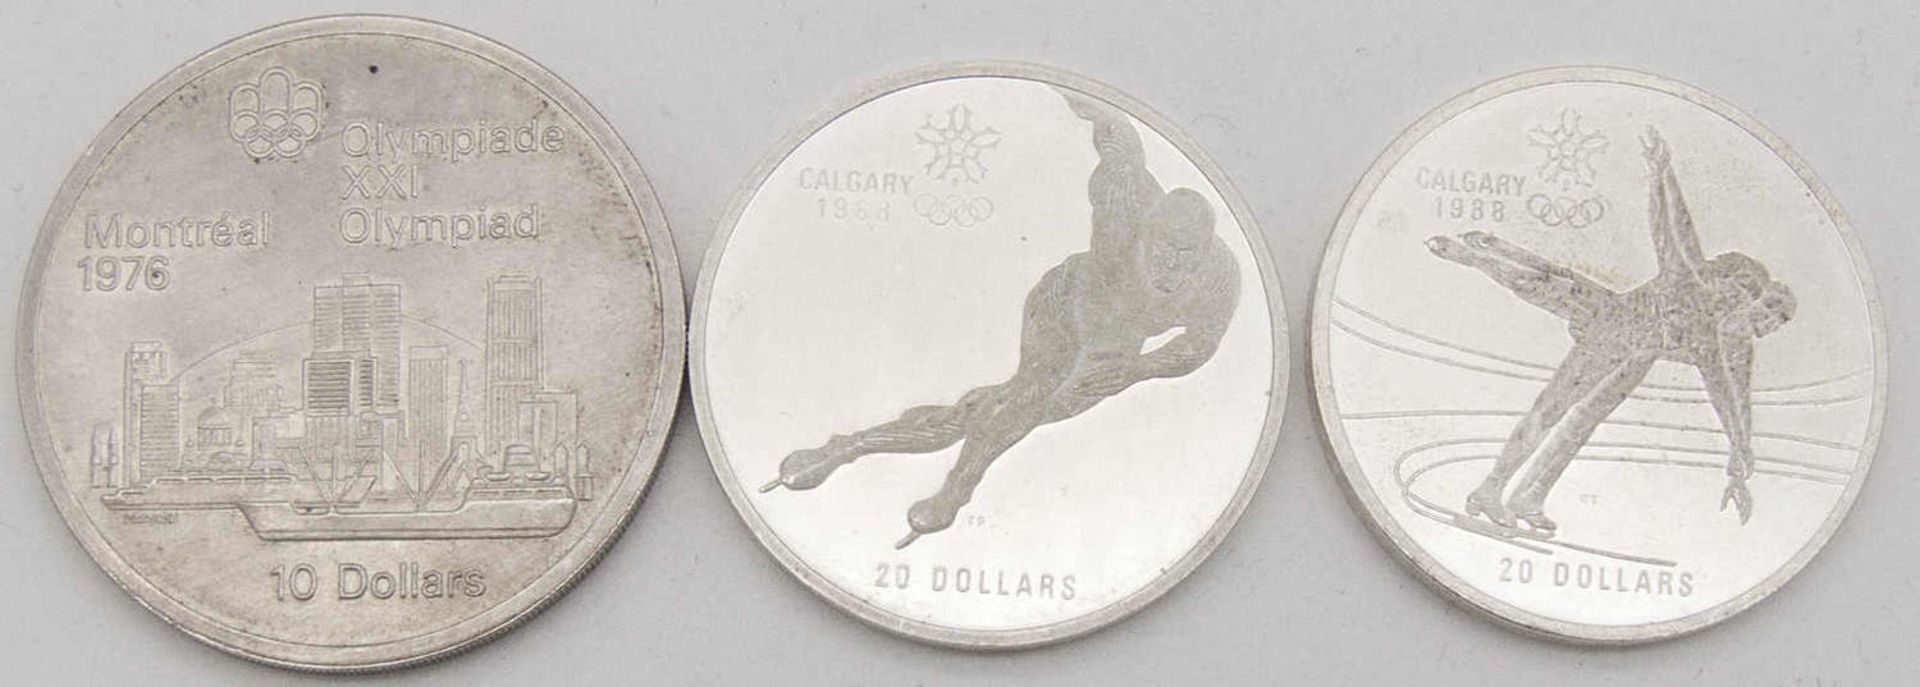 Kanada 1976/88, 1 x 10 Dollars - Silbermünze 1976 "Stadtansicht" und 2 x 20 Dollars - Silbermünzen